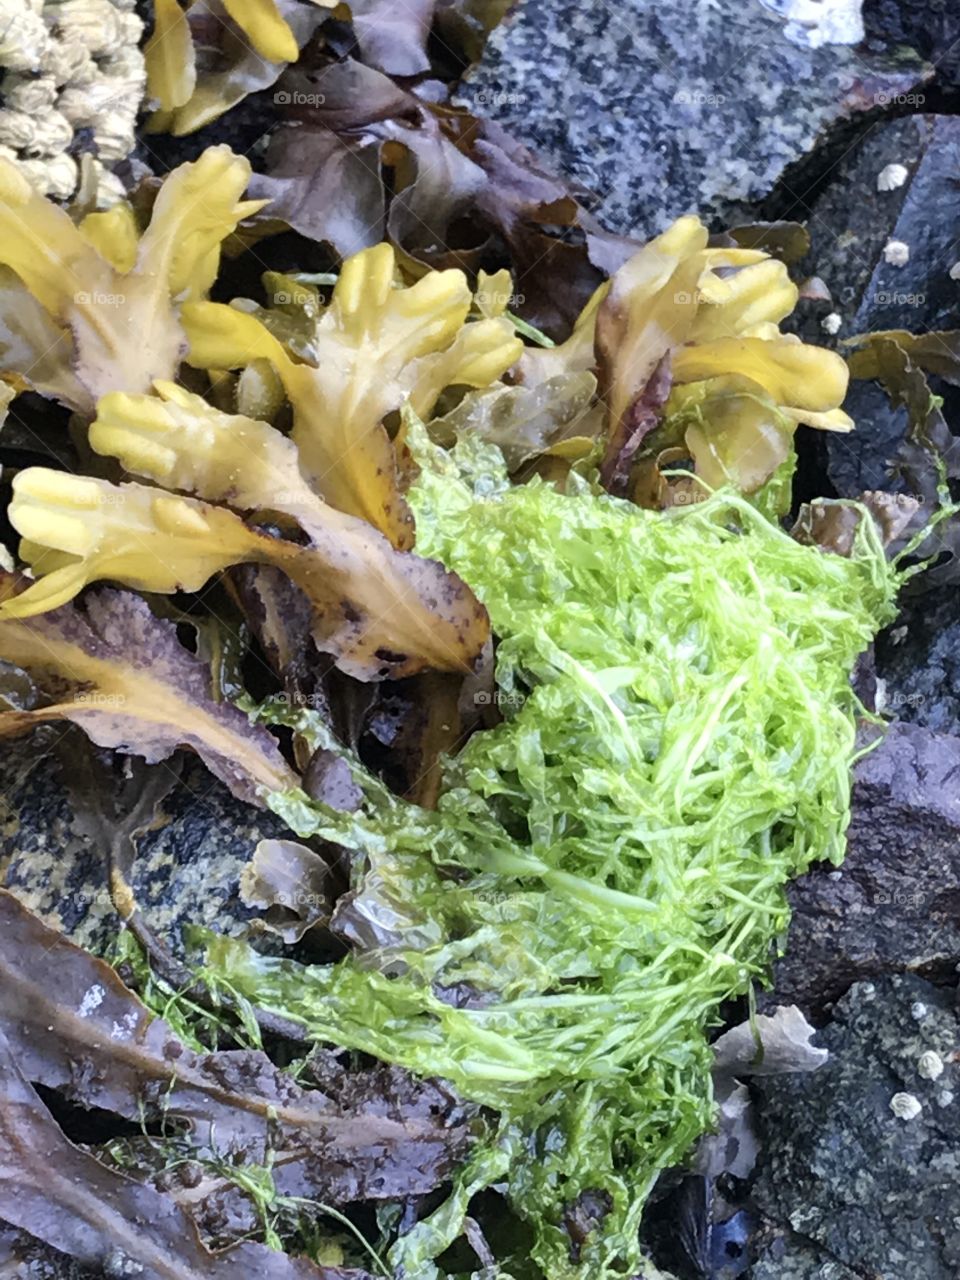 West coast seaweed